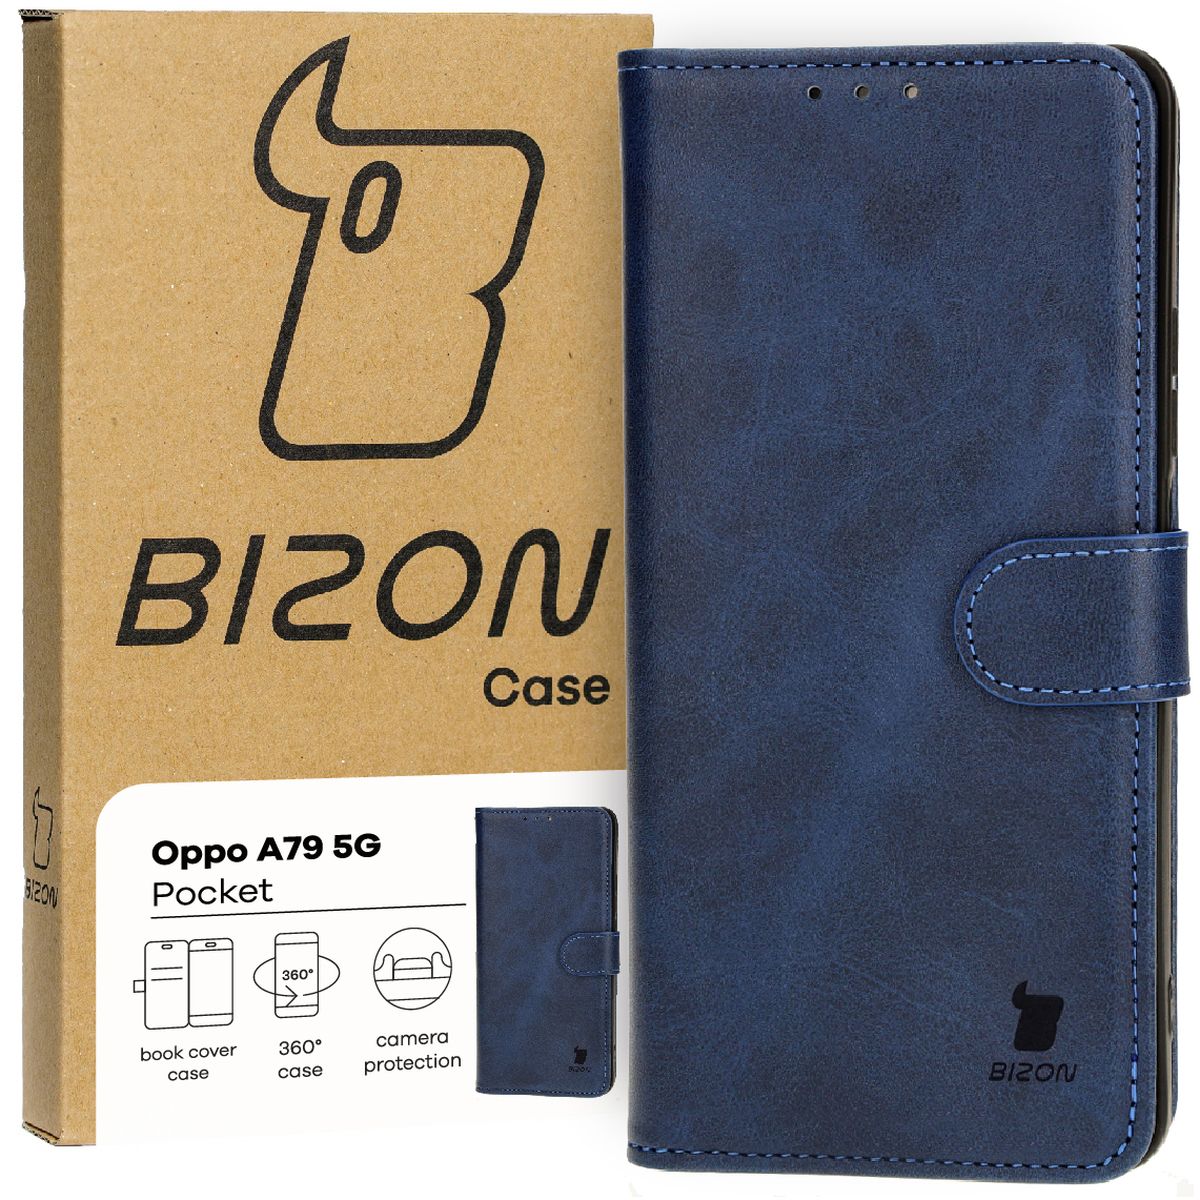 Schutzhülle für Oppo A79 5G, Bizon Case Pocket, Dunkelblau